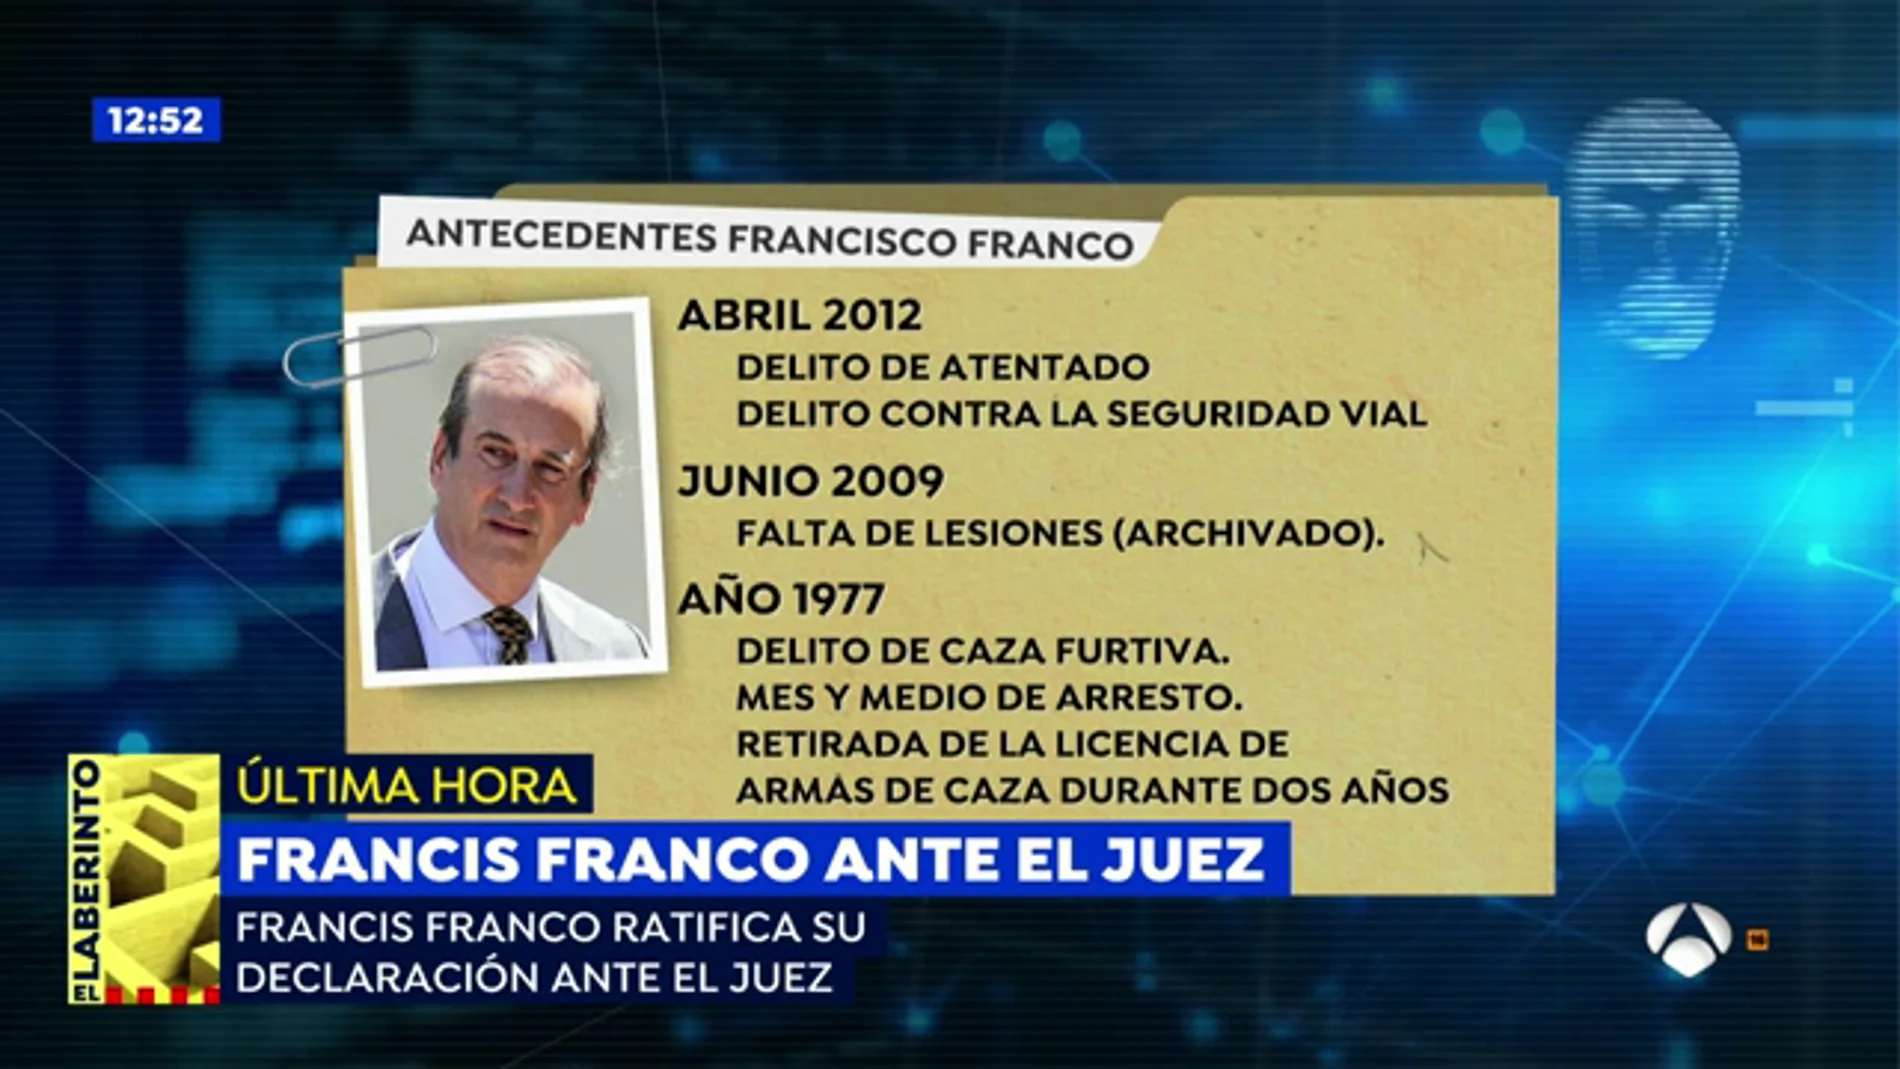 Francis Franco ratifica su declaración y asegura que no era él quien conducía el vehículo que se dio a la fuga